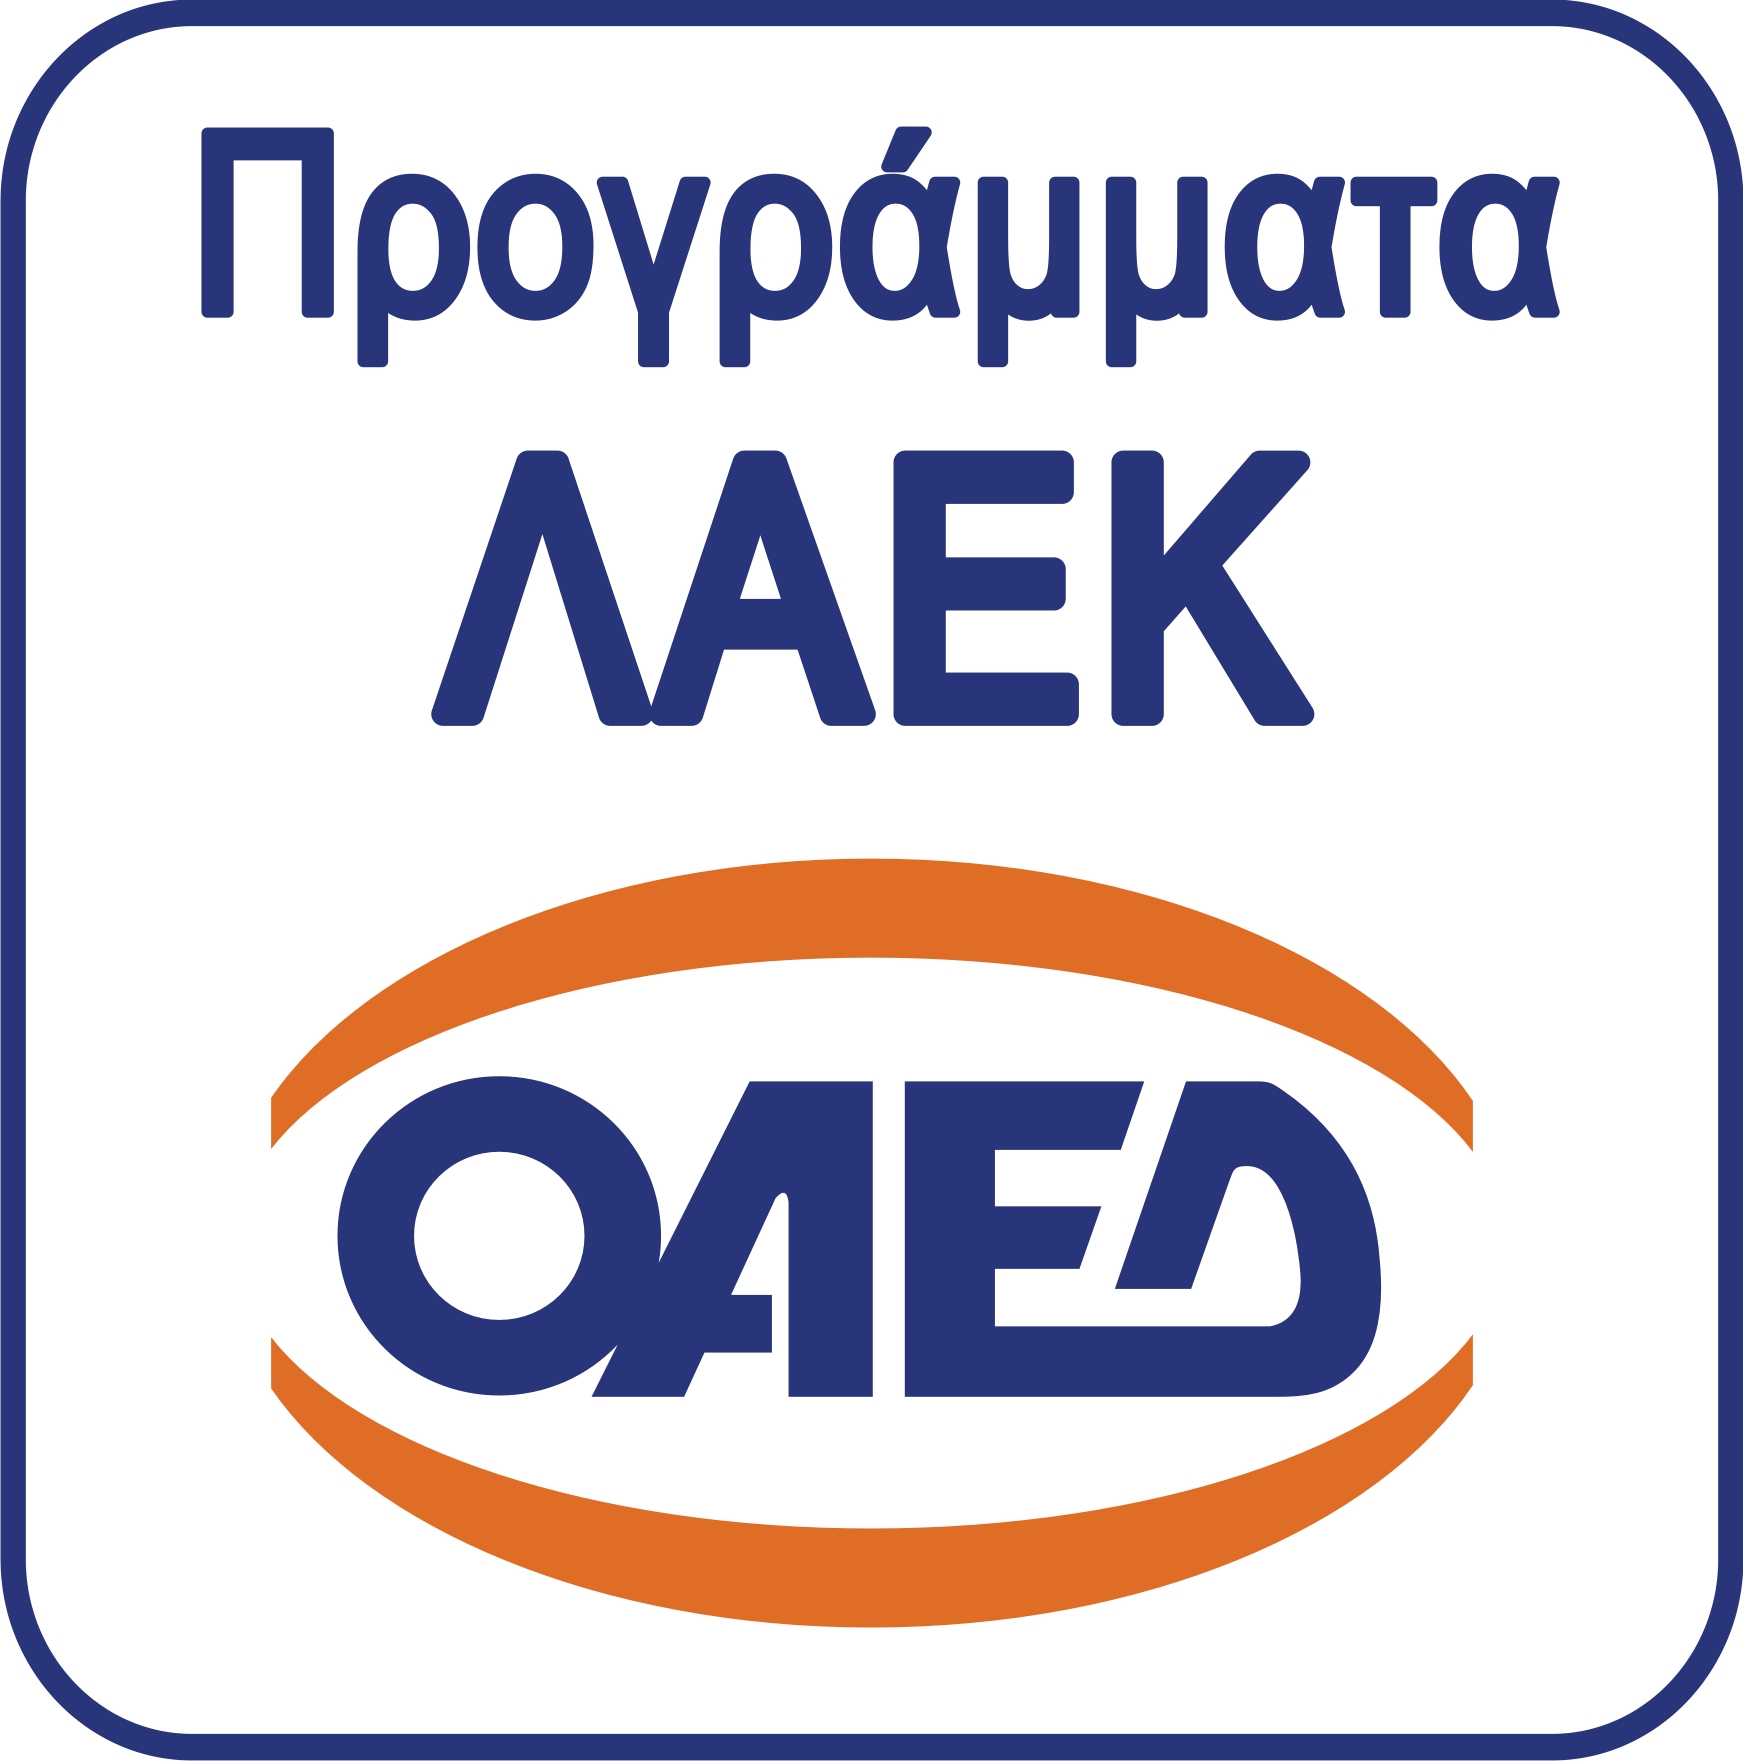 OAED LAEK logo